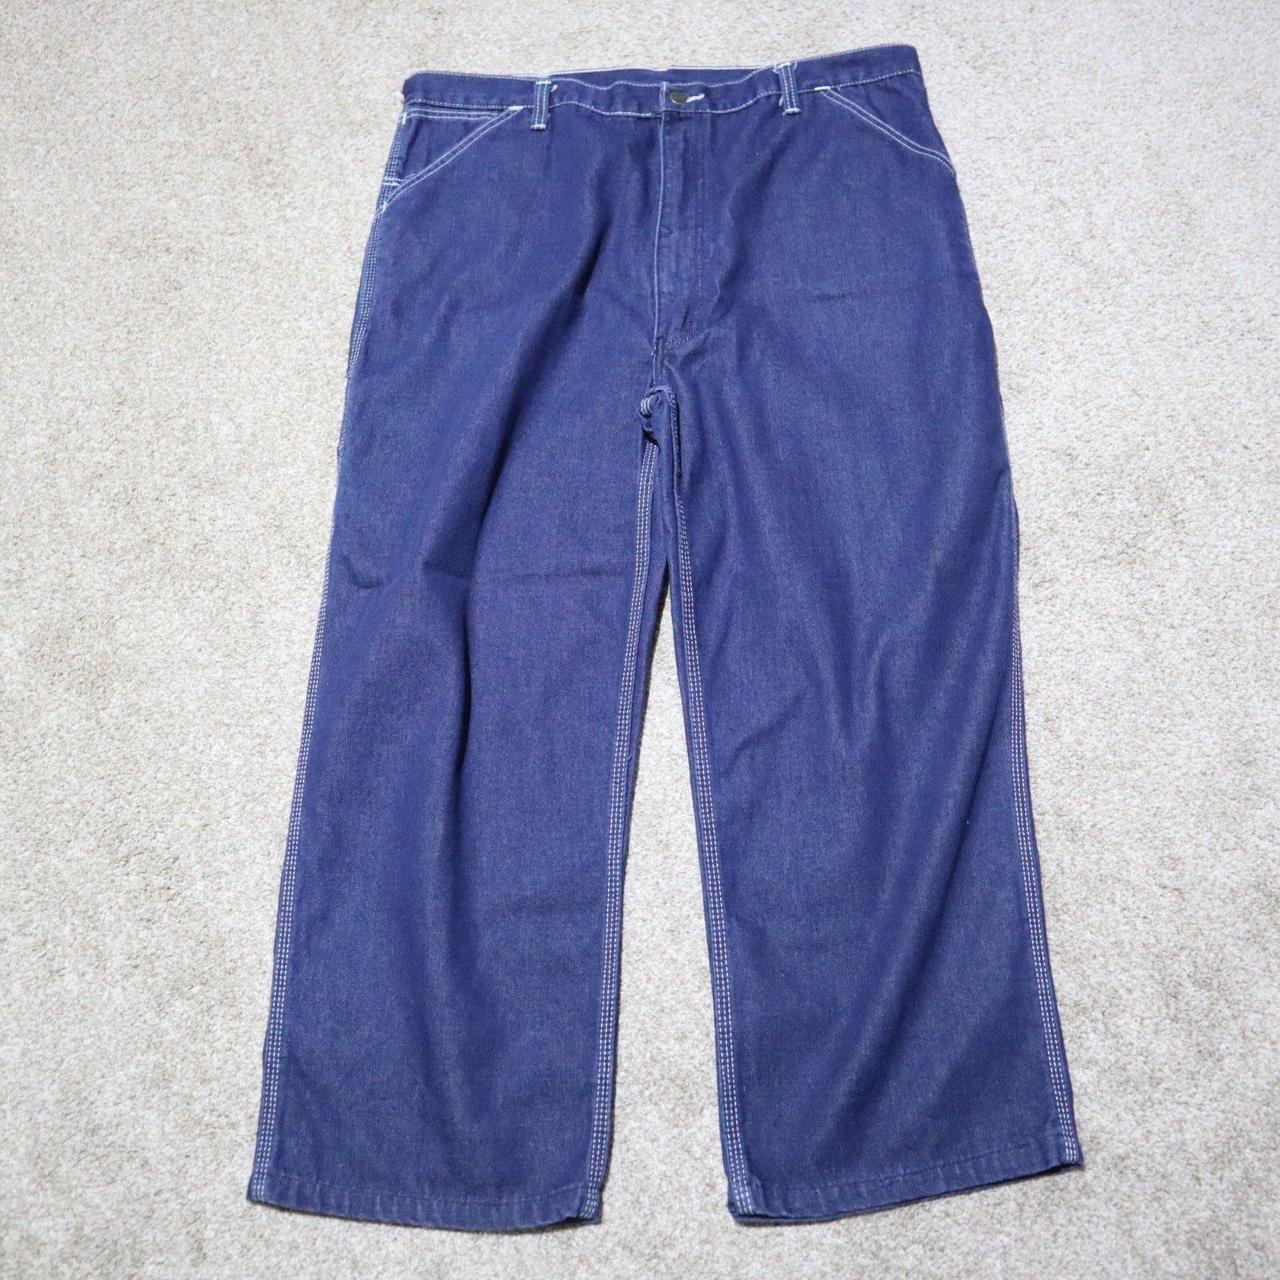 Roebucks Vintage Jean Pants From Sears Roebuck & Co.... - Depop